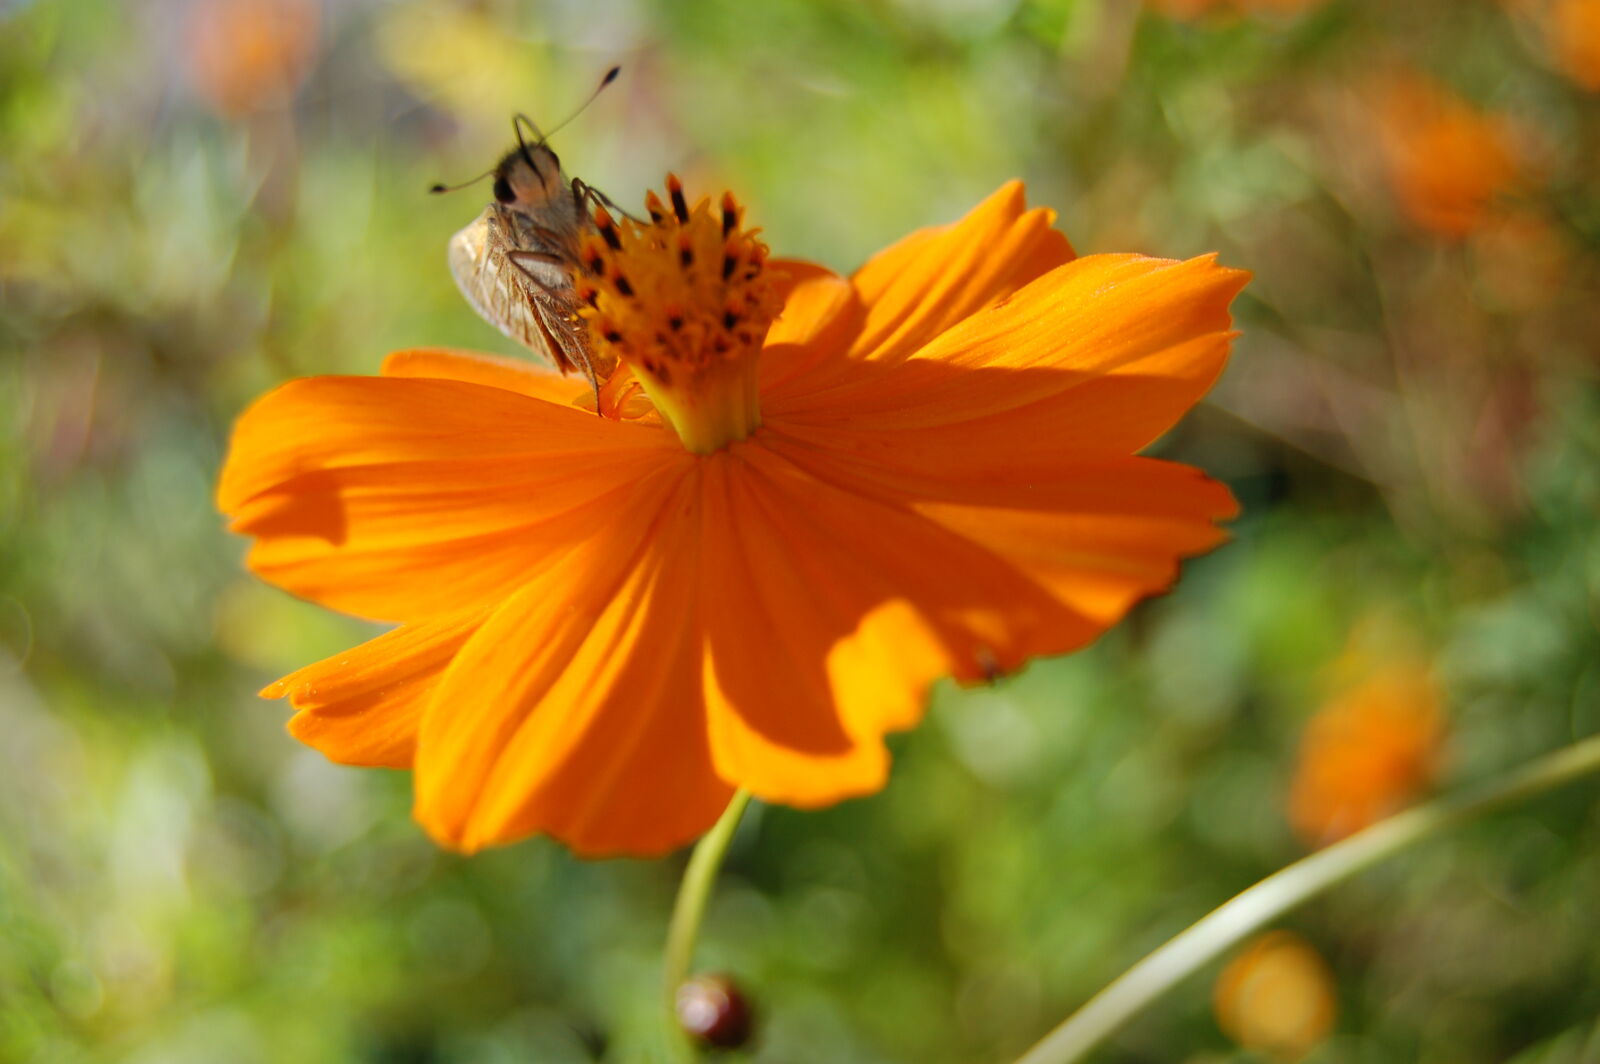 Nikon D50 + AF-S DX Zoom-Nikkor 18-55mm f/3.5-5.6G ED sample photo. Bee, insect, orange, orange photography